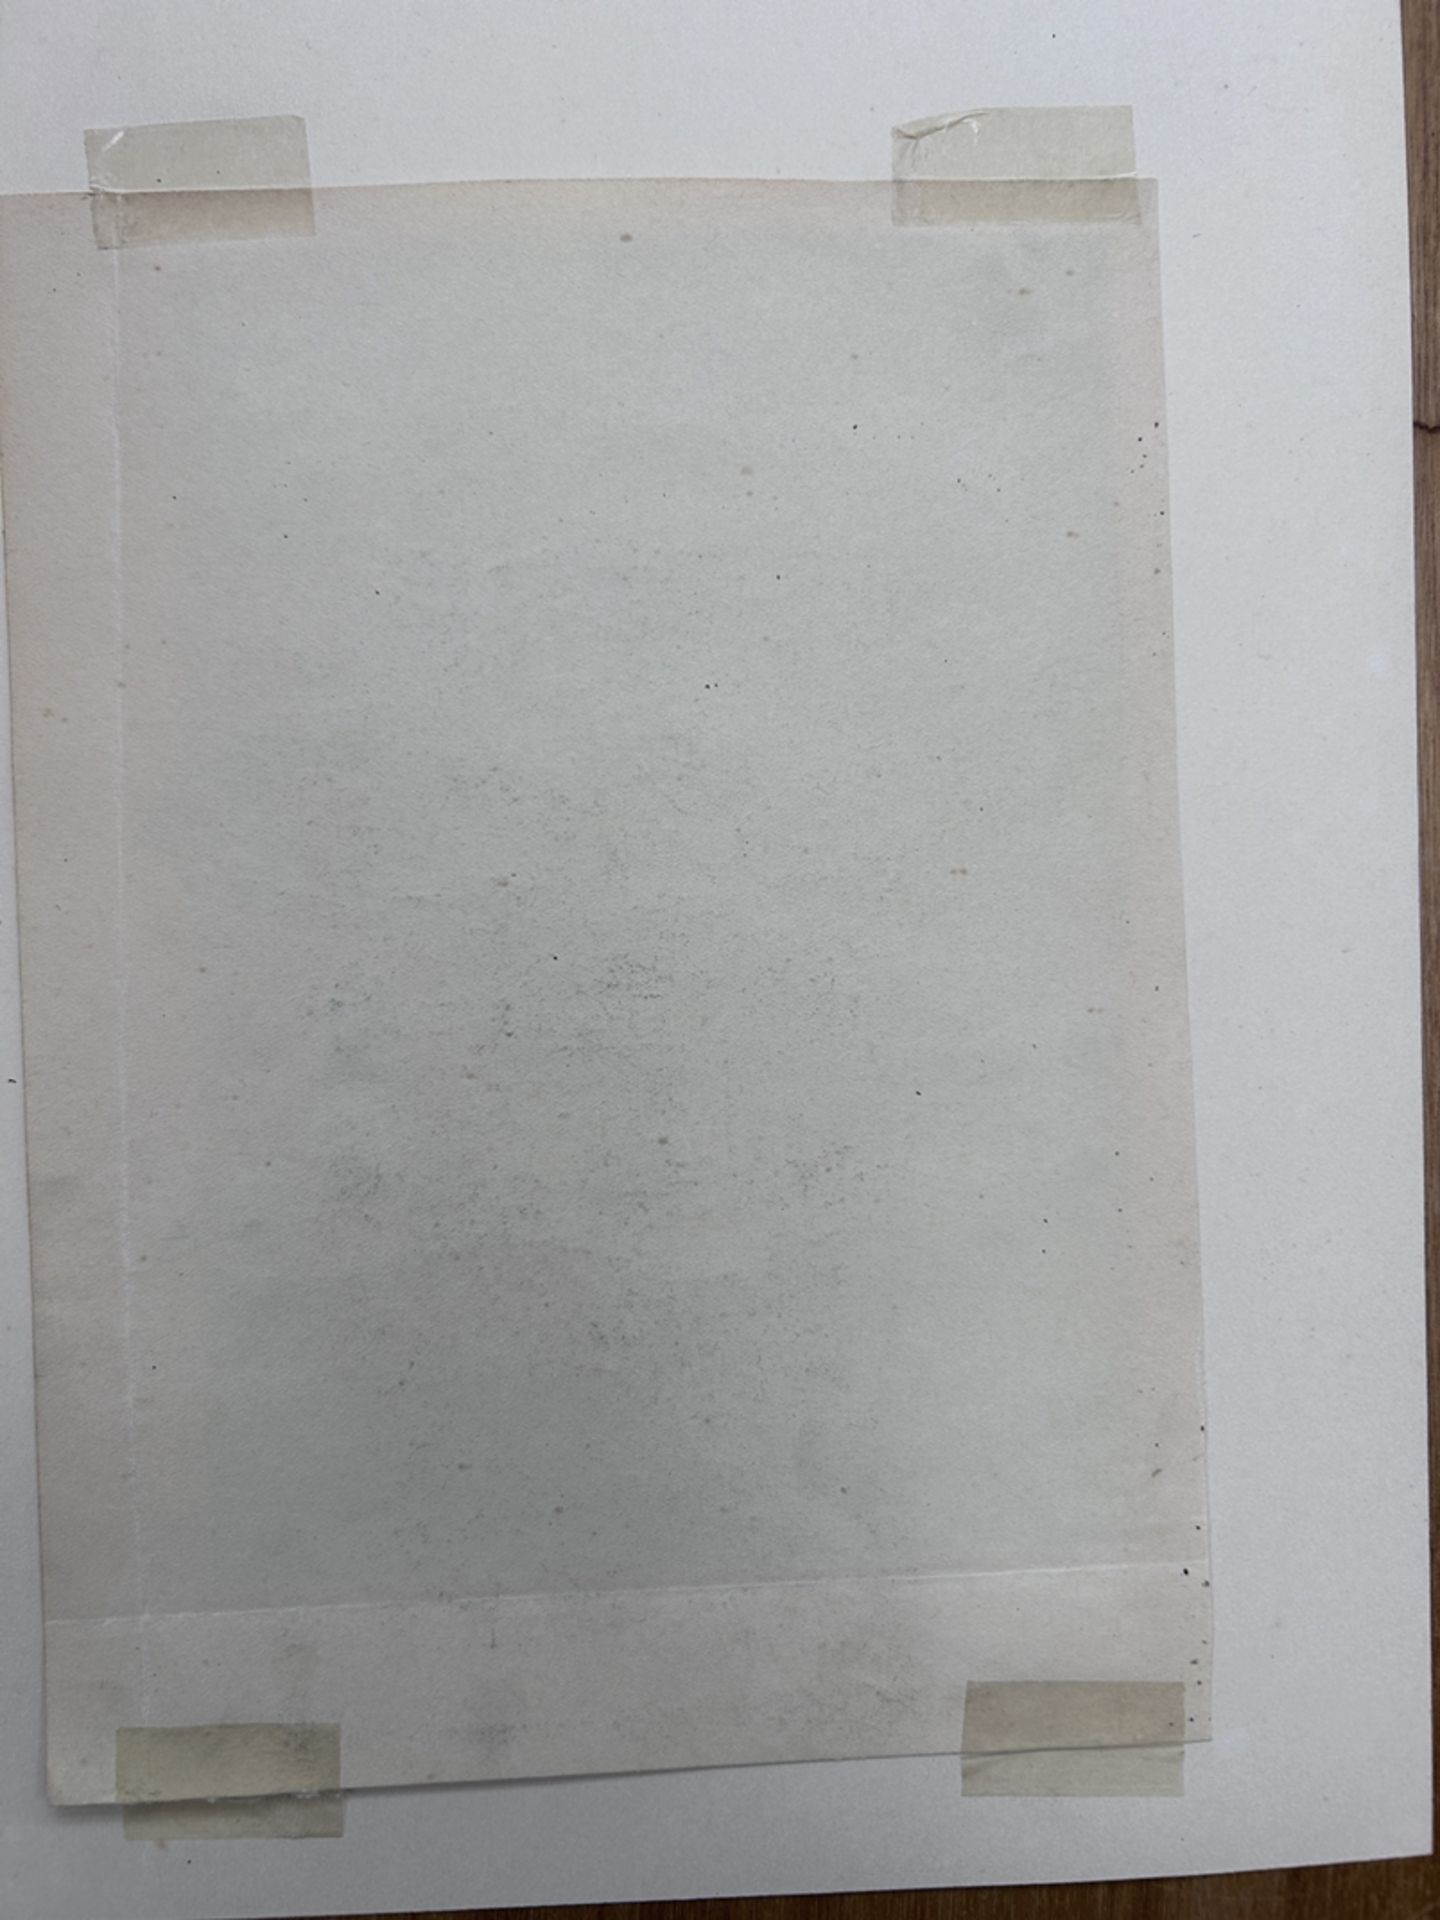 ER, 1914, 2x Stiftzeichnungen, wohl beide Gießen, 1x Neustädter Tor in PP., BG je. 30x23 cm - Image 5 of 5